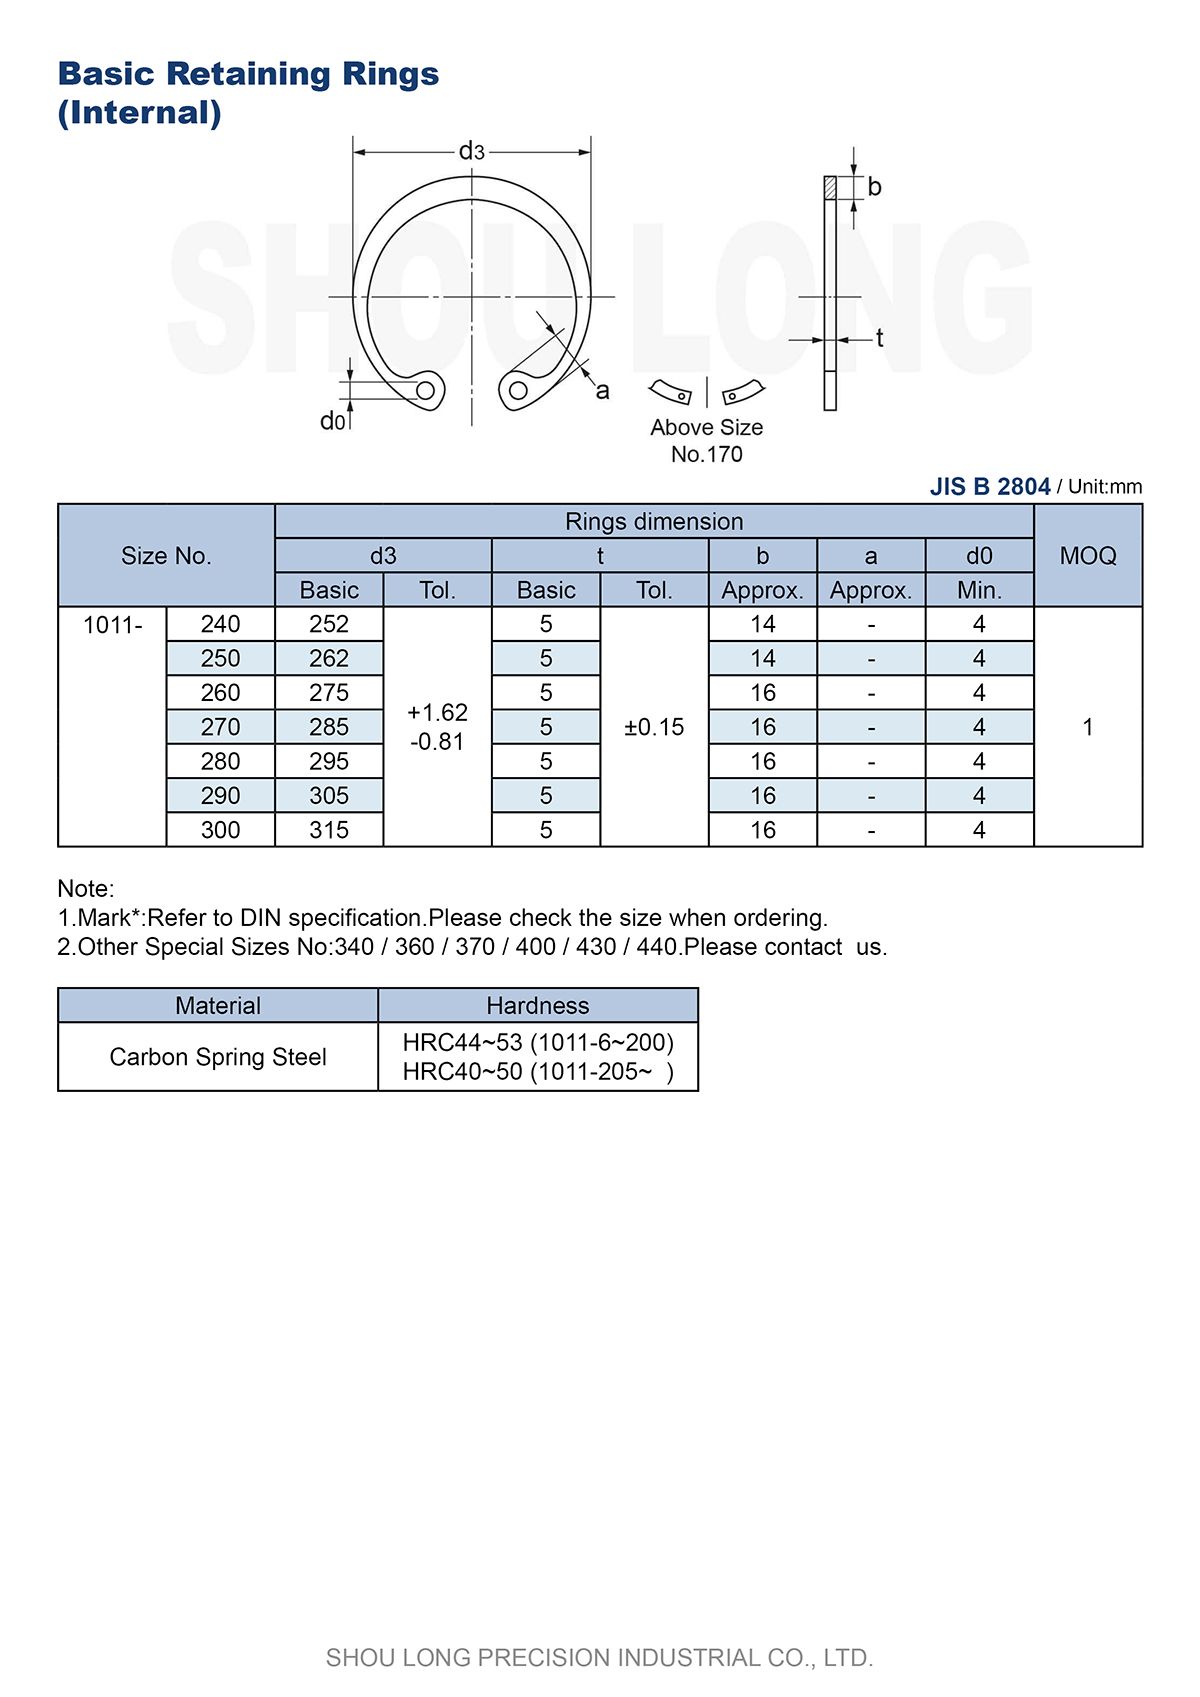 Especificación de Anillos de Retención Básicos Métricos JIS para Agujeros B2804-4